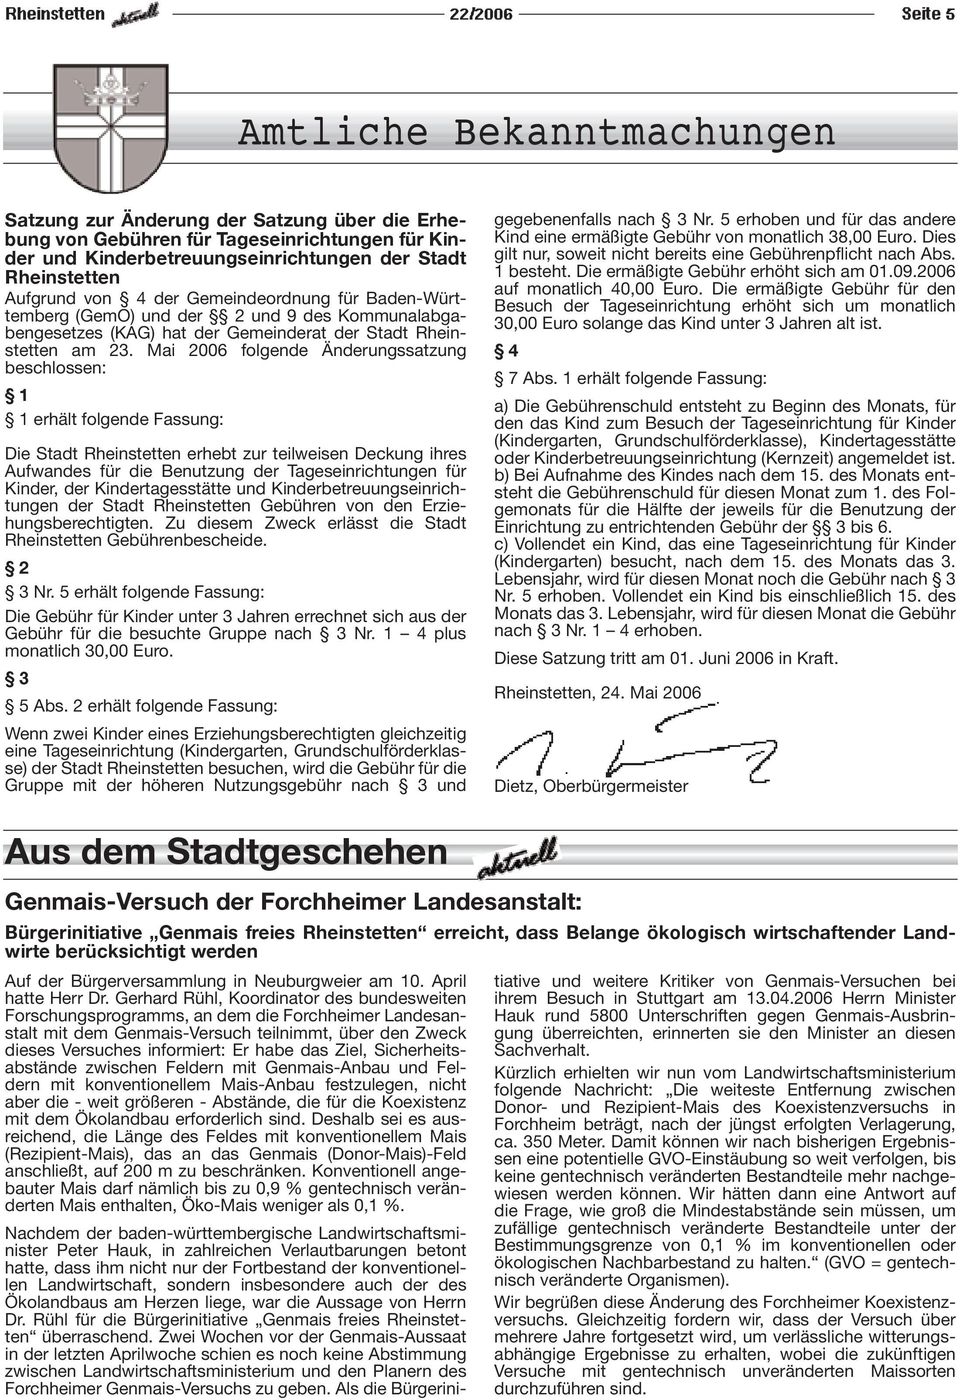 Mai 2006 folgende Änderungssatzung beschlossen: 1 1 erhält folgende Fassung: Die Stadt Rheinstetten erhebt zur teilweisen Deckung ihres Aufwandes für die Benutzung der Tageseinrichtungen für Kinder,